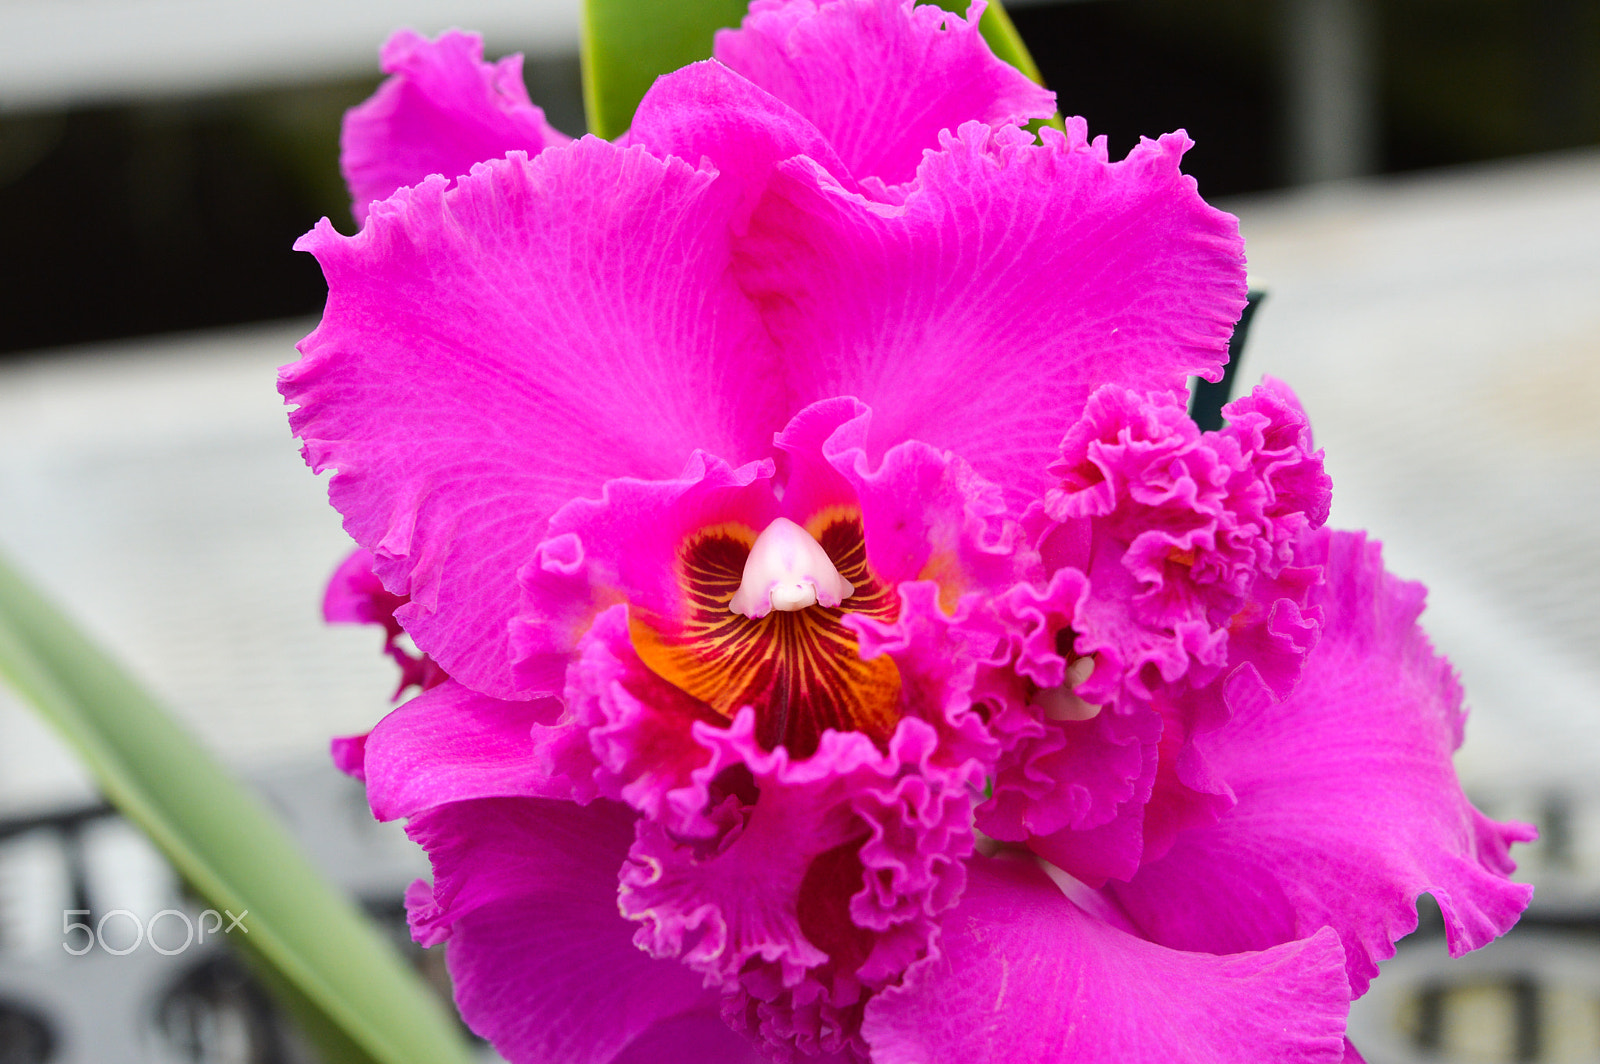 Nikon D3200 + Nikon AF-S Nikkor 28-300mm F3.5-5.6G ED VR sample photo. Fancy pink orchid photography